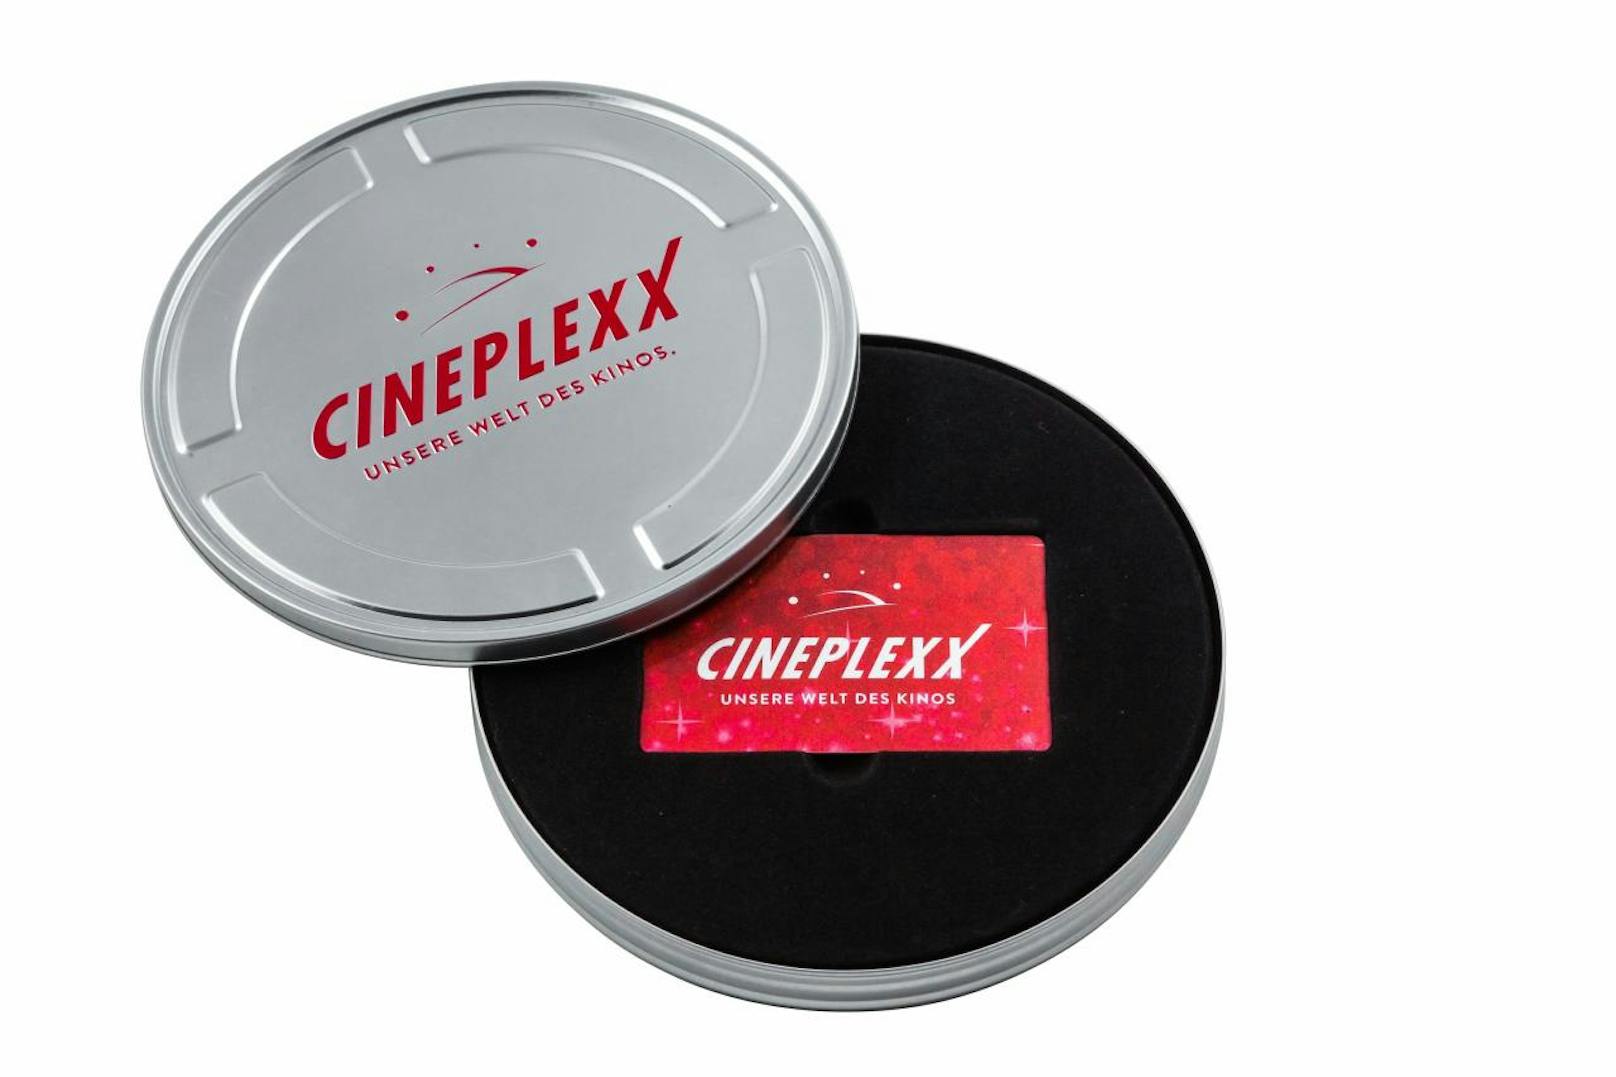 Das perfekte Geschenk für Film- und Kinofans: Die hochwertigen Filmdosen mit <b>Gutschein</b> im Wert von 20, 30 oder 50 Euro sind direkt an den <b>Cineplexx-Kinokassen</b> erhältlich - in der Vorweihnachtszeit gibt es außerdem eine limitierte Geschenkkarte mit Der Grinch-Motiv.